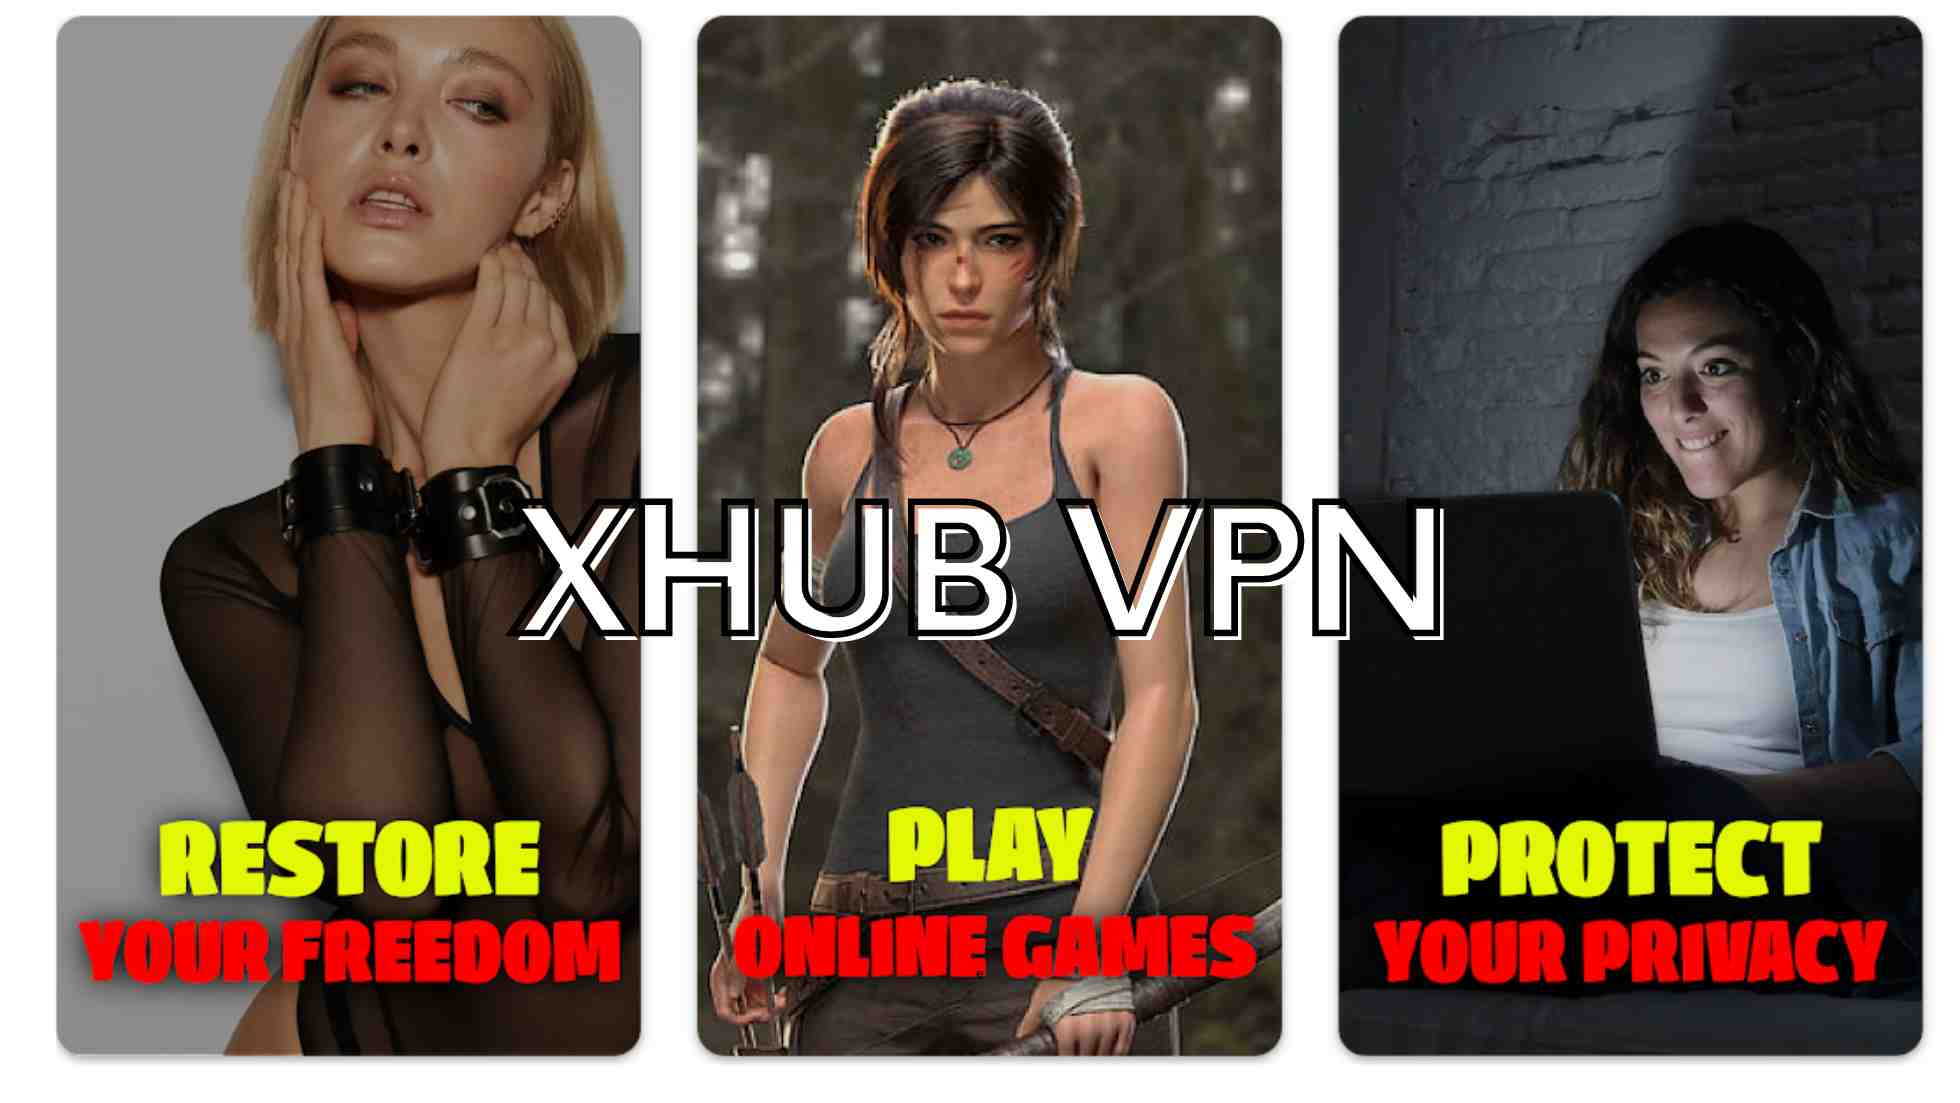 XHUB VPN